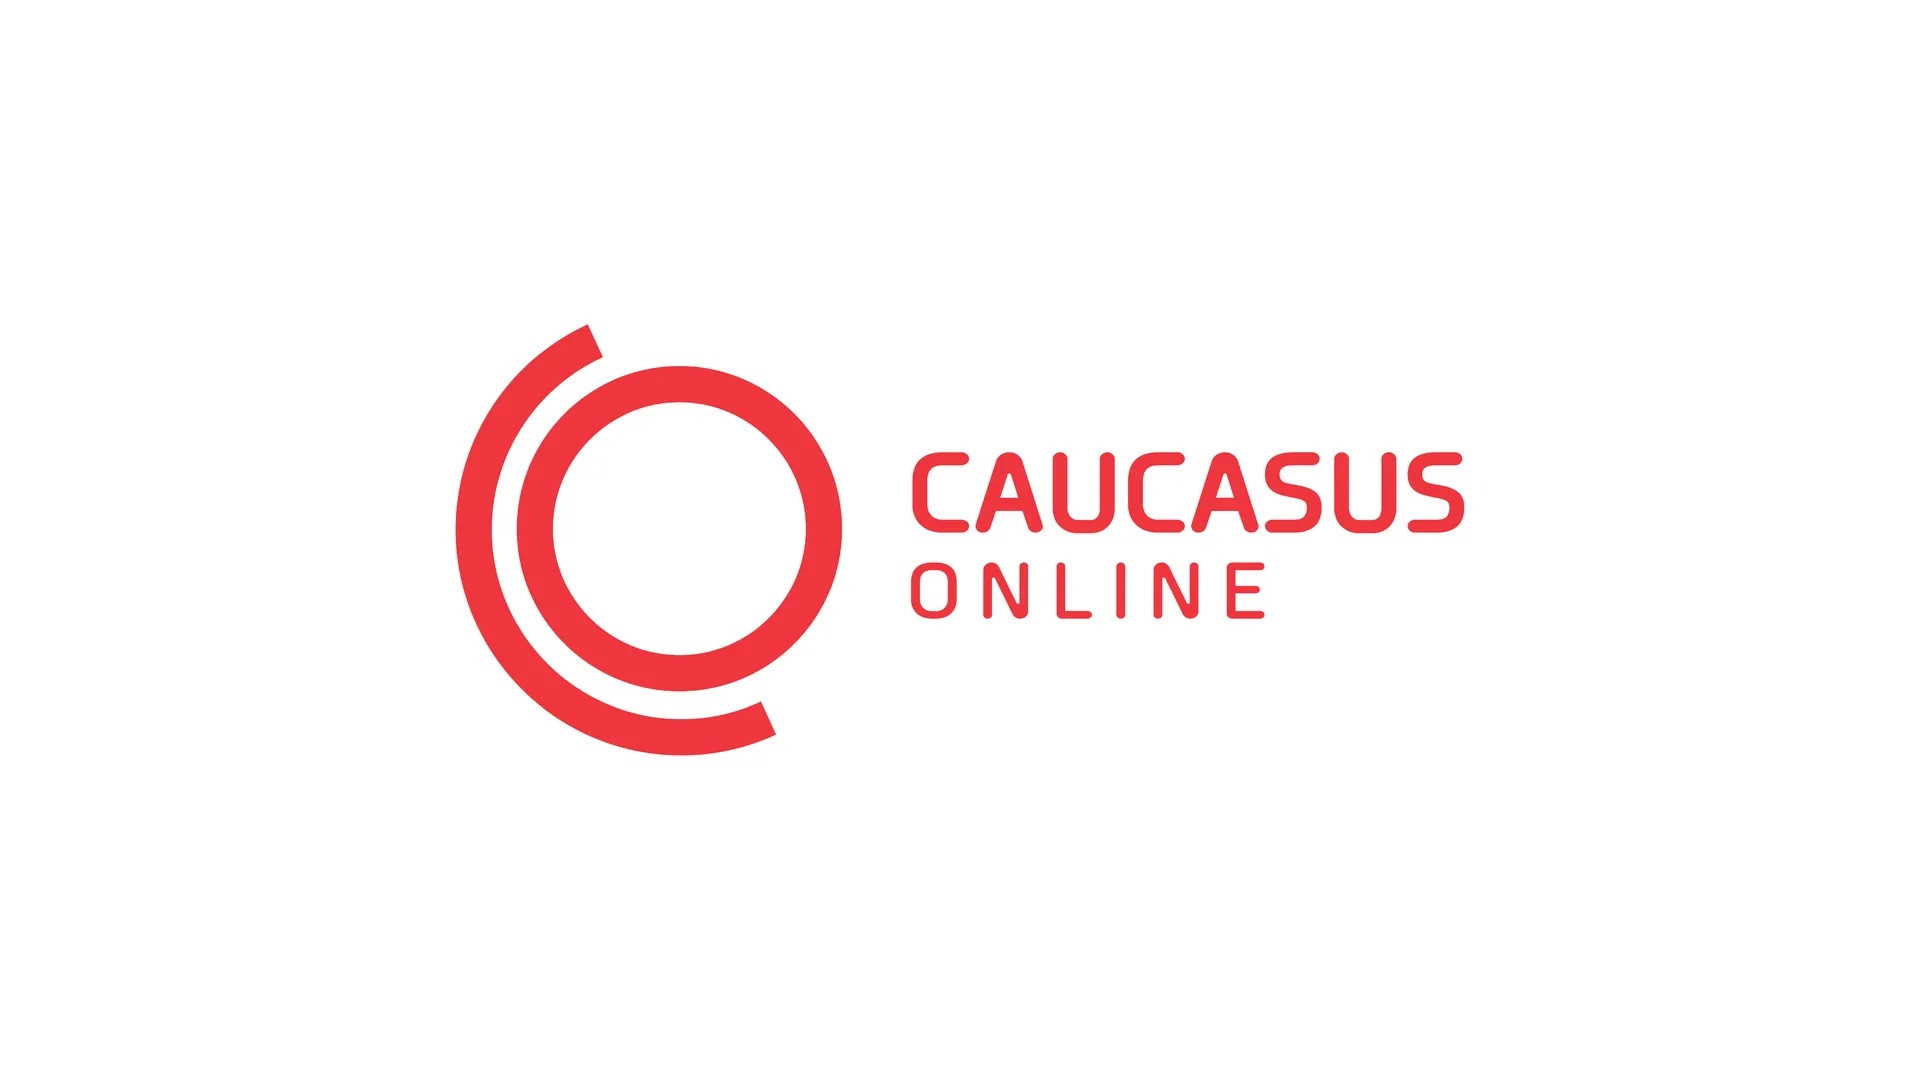 Caucasus online